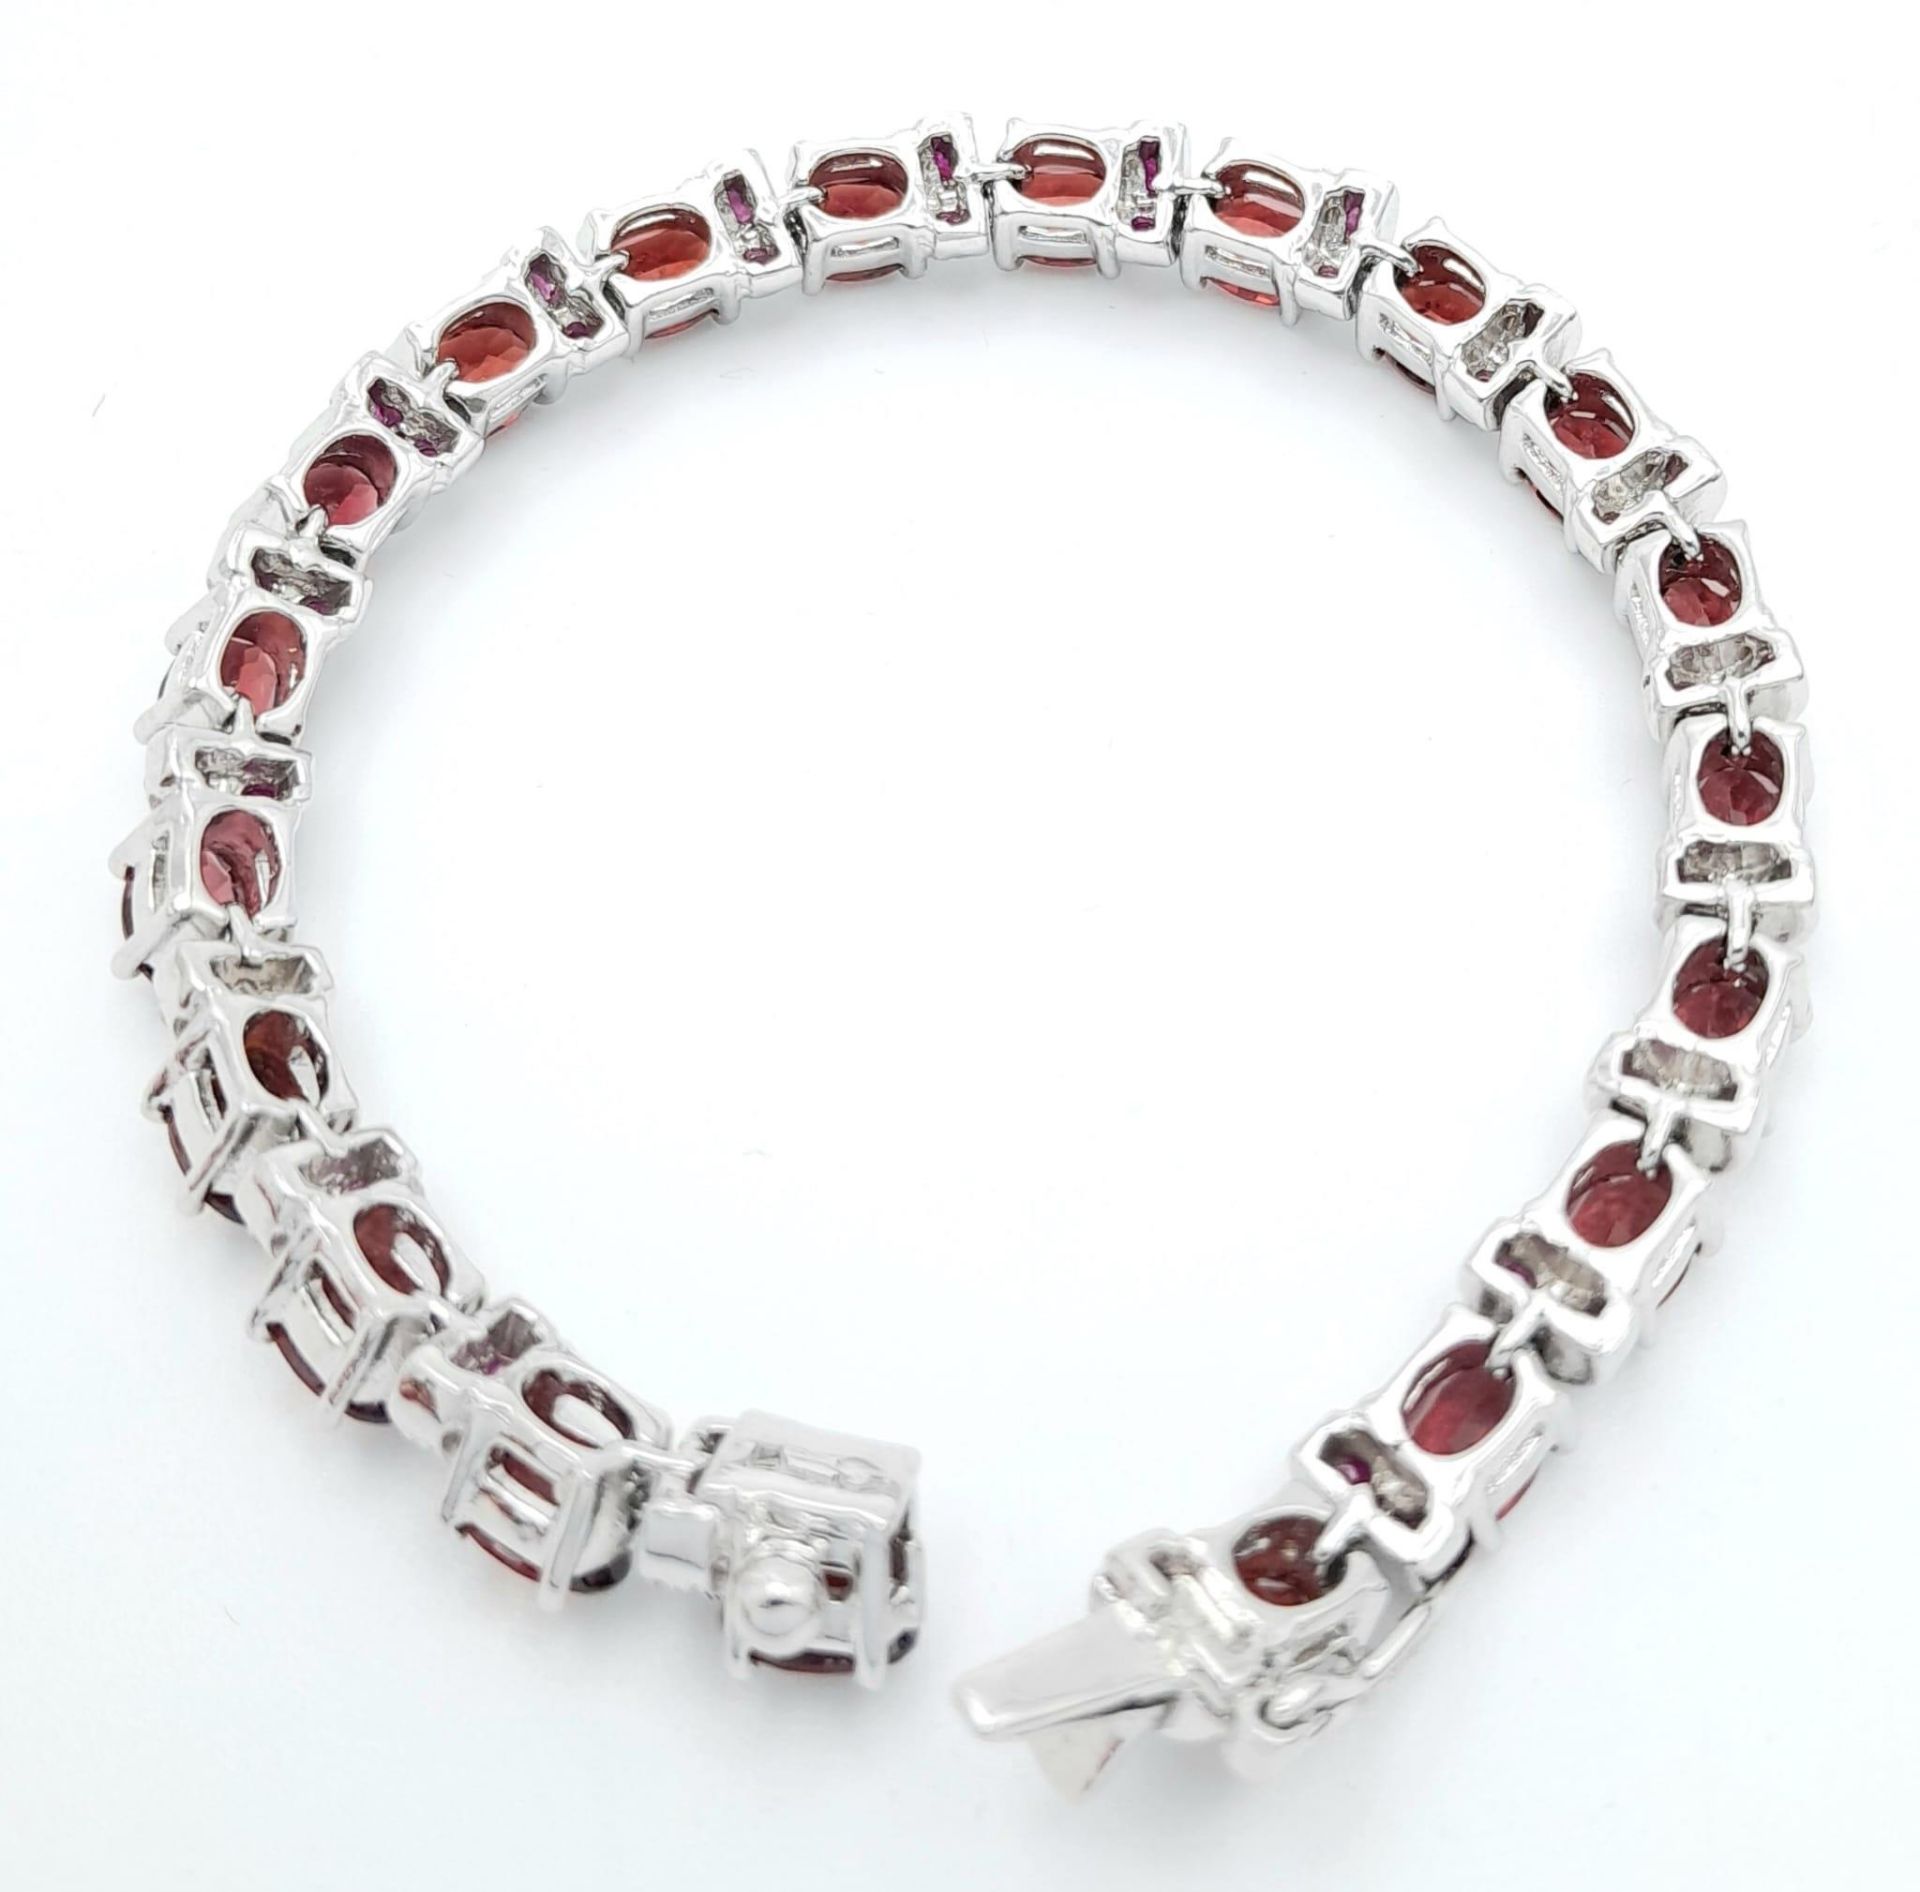 A Hessonite Garnet & Madagascar, Ruby Spacer Gemstone 925 Silver Bracelet. Weight - 28.9g. 18cm - Bild 4 aus 4